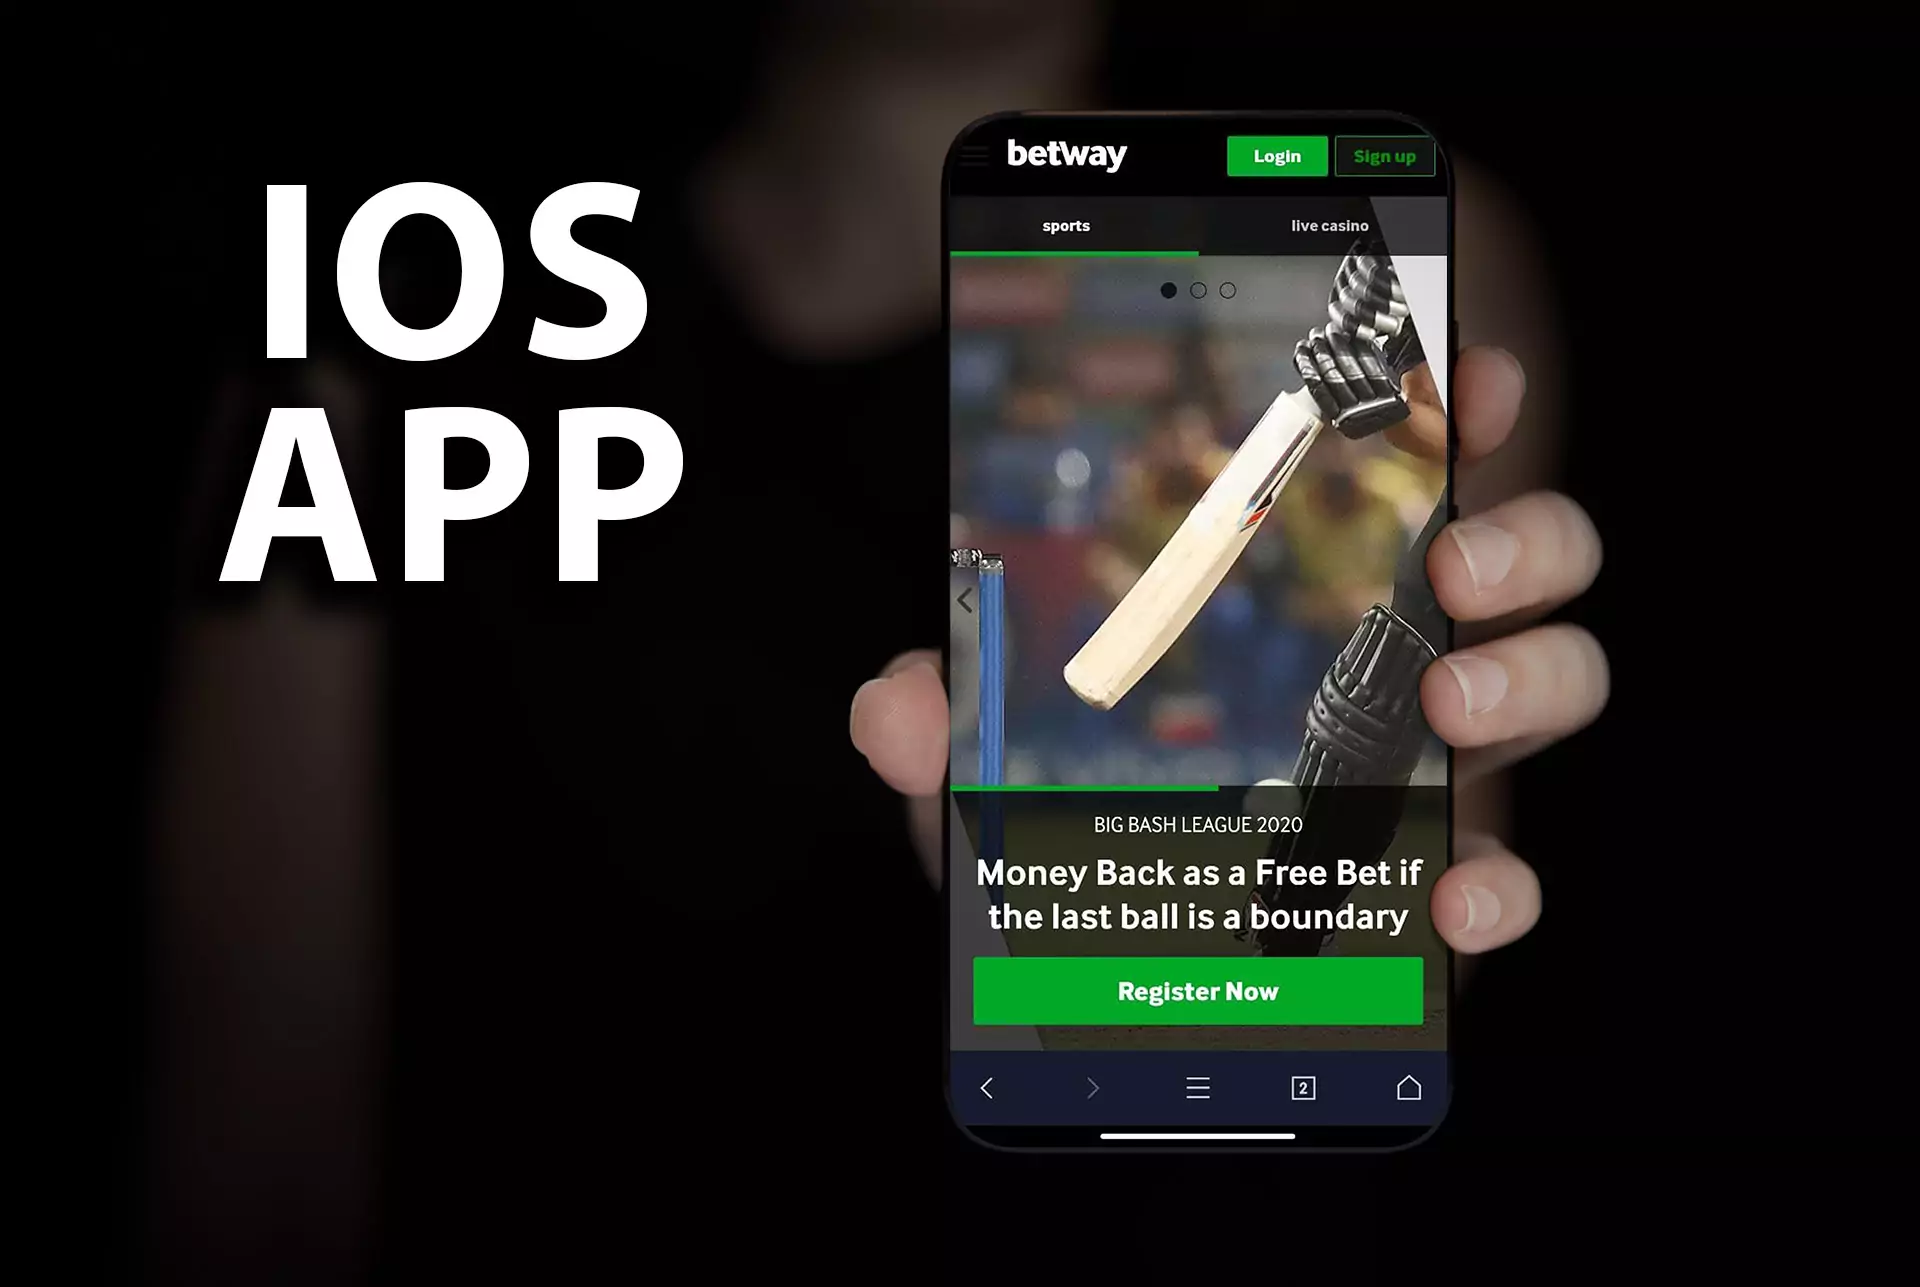 बेटवे को क्रिकेट सट्टेबाजी के लिए सबसे अच्छा मोबाइल ऐप माना जाता है ।